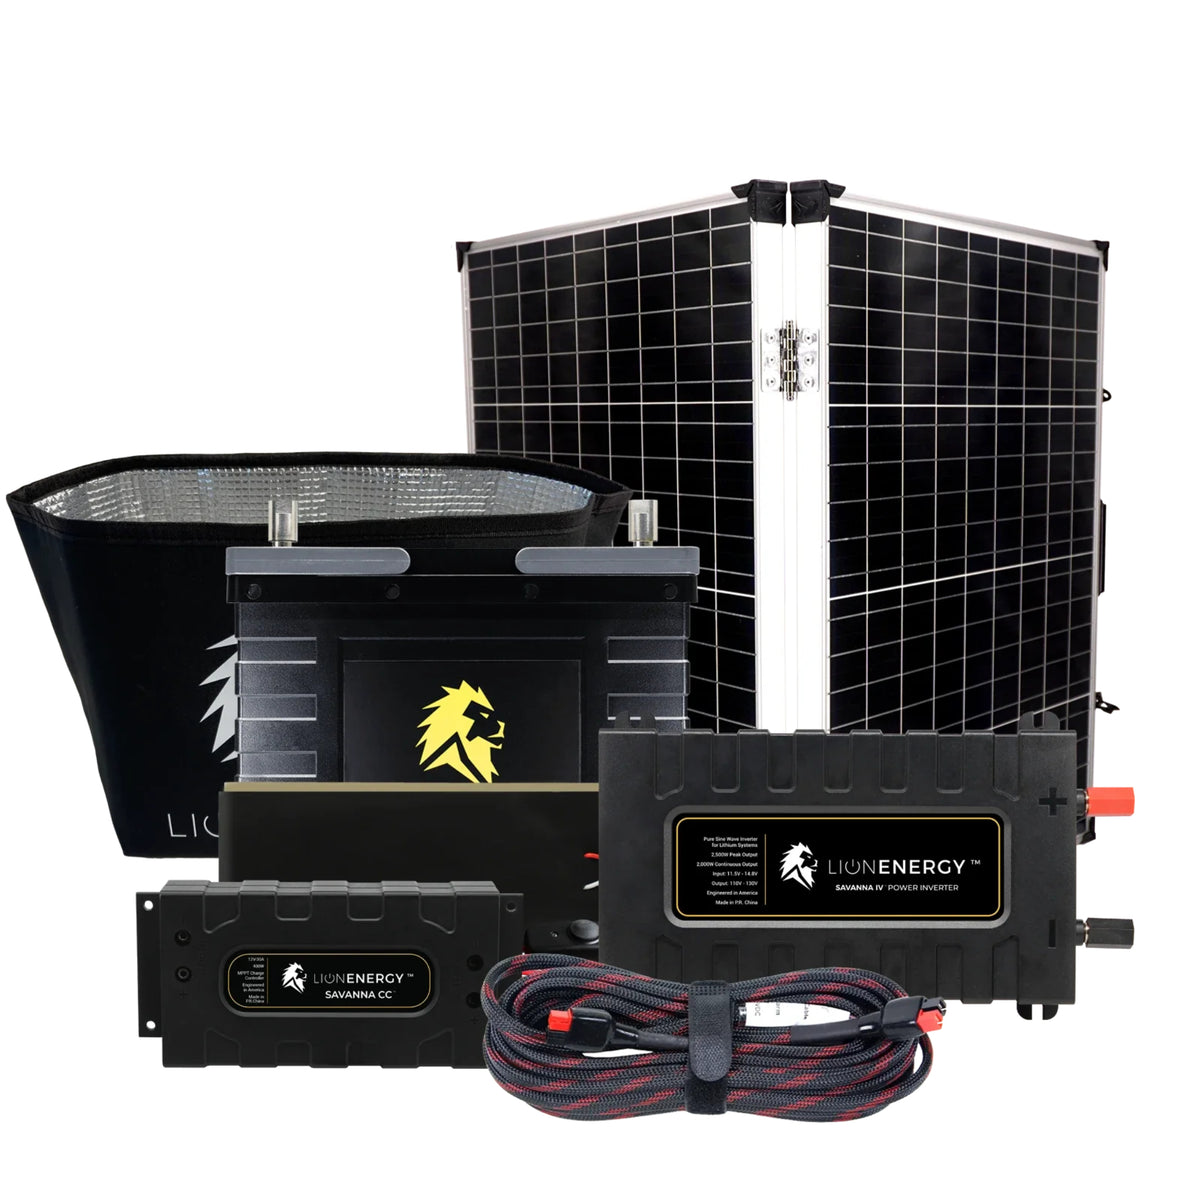 Lion Energy | 12V 105Ah Solar Power System + Inverter | Build Your Own Kit